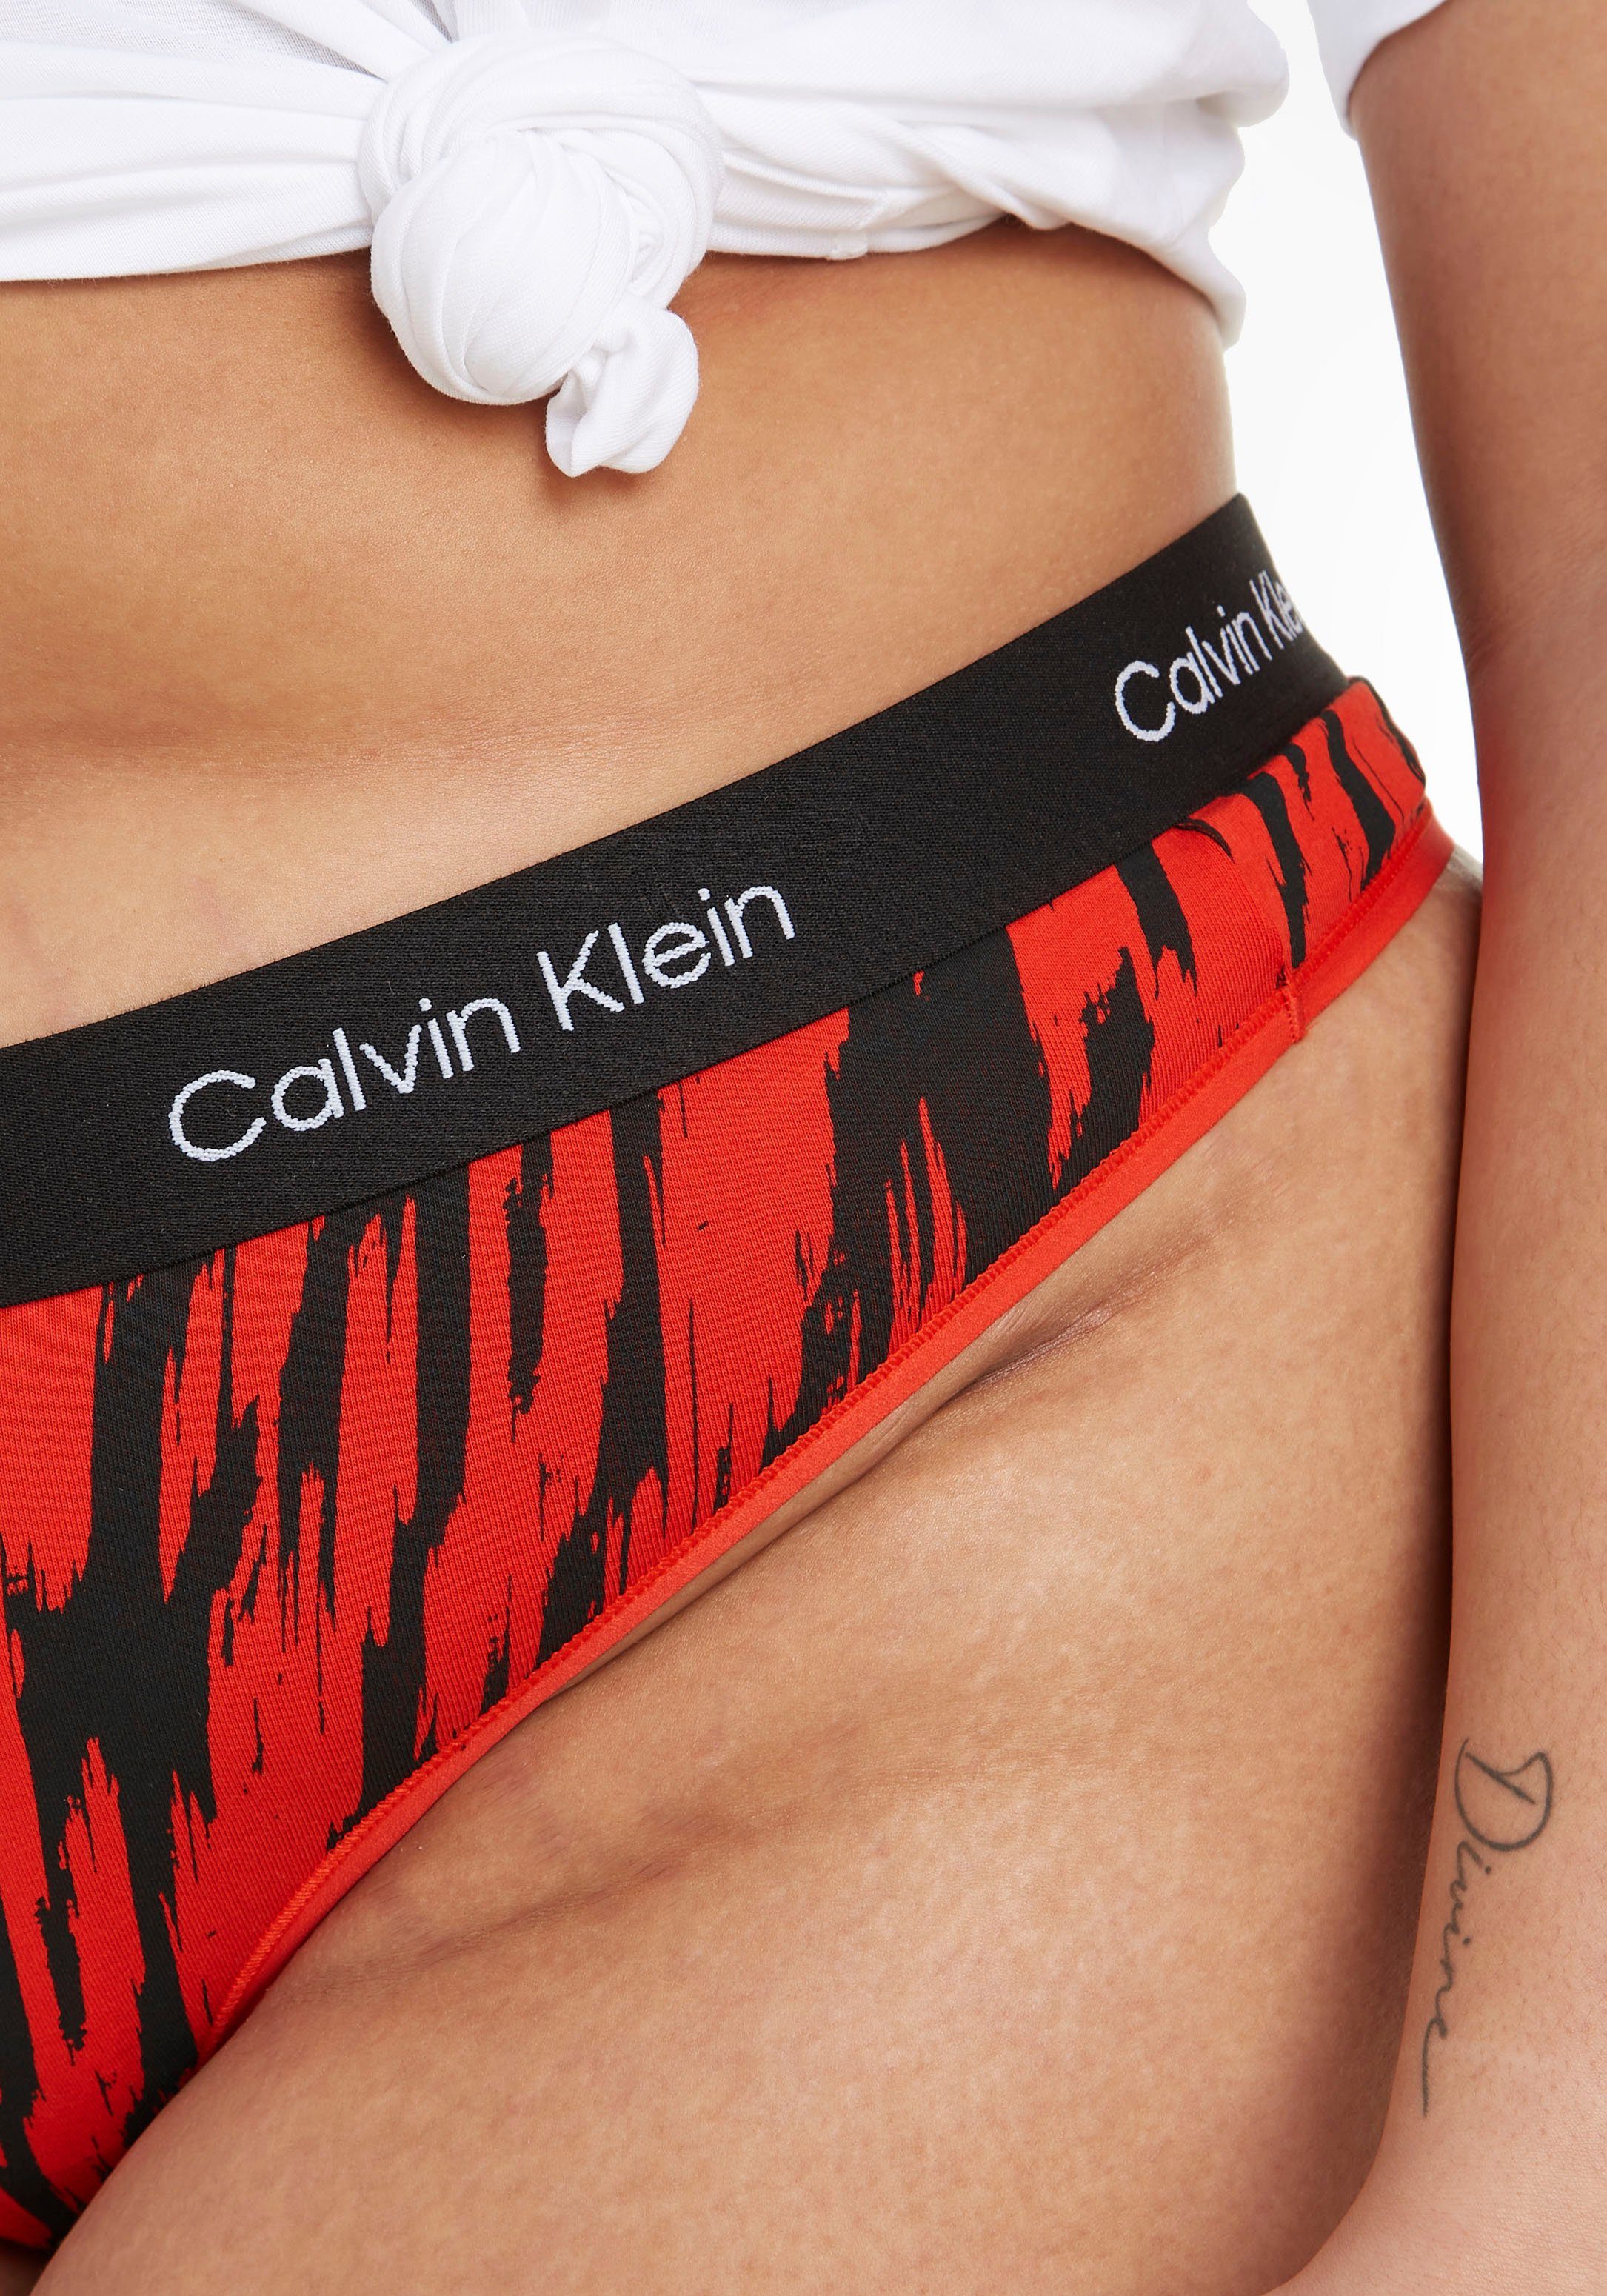 THONG Klein Underwear BLUR-LEOPARD/HAZARD Alloverprint T-String Calvin MODERN mit